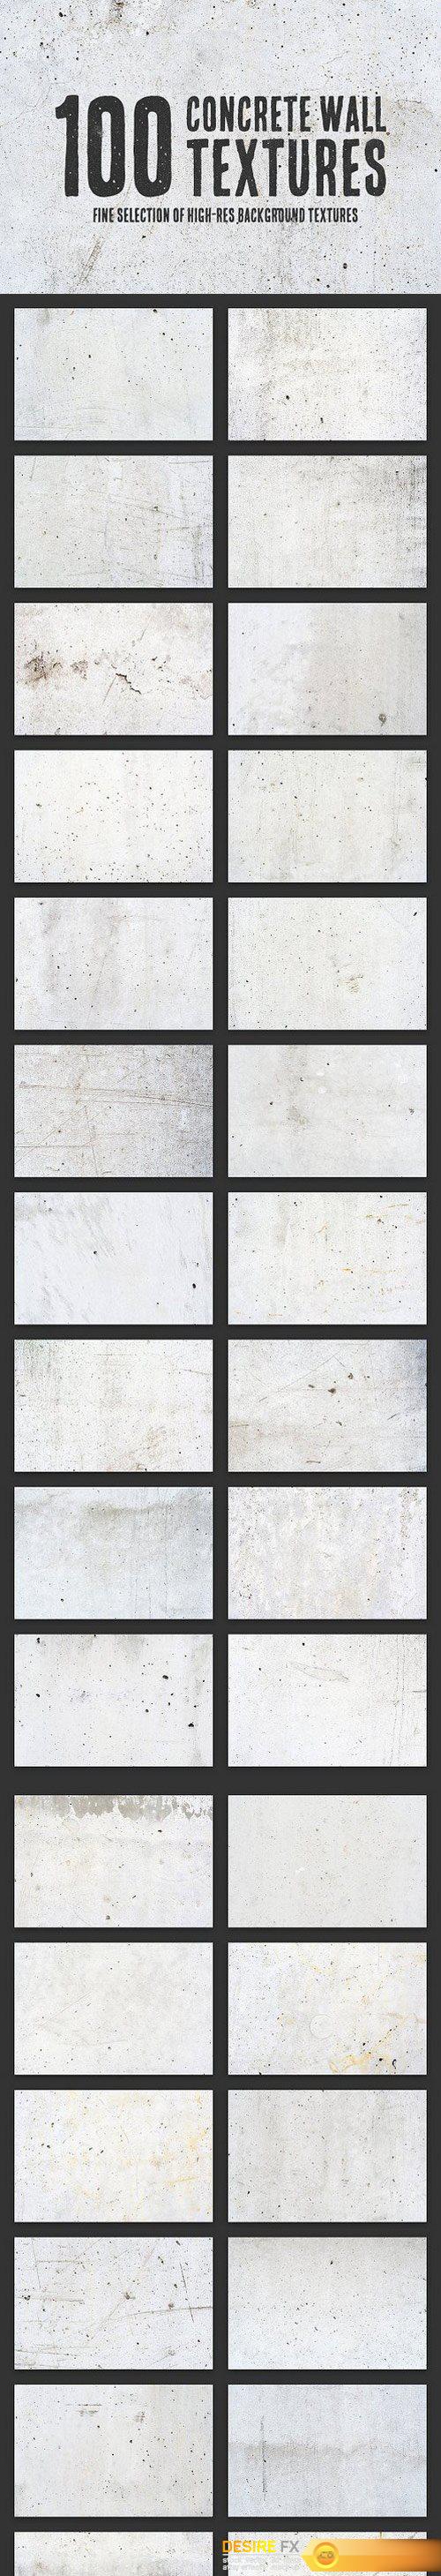 CM - 100 Concrete Wall Textures Bundle 1373002